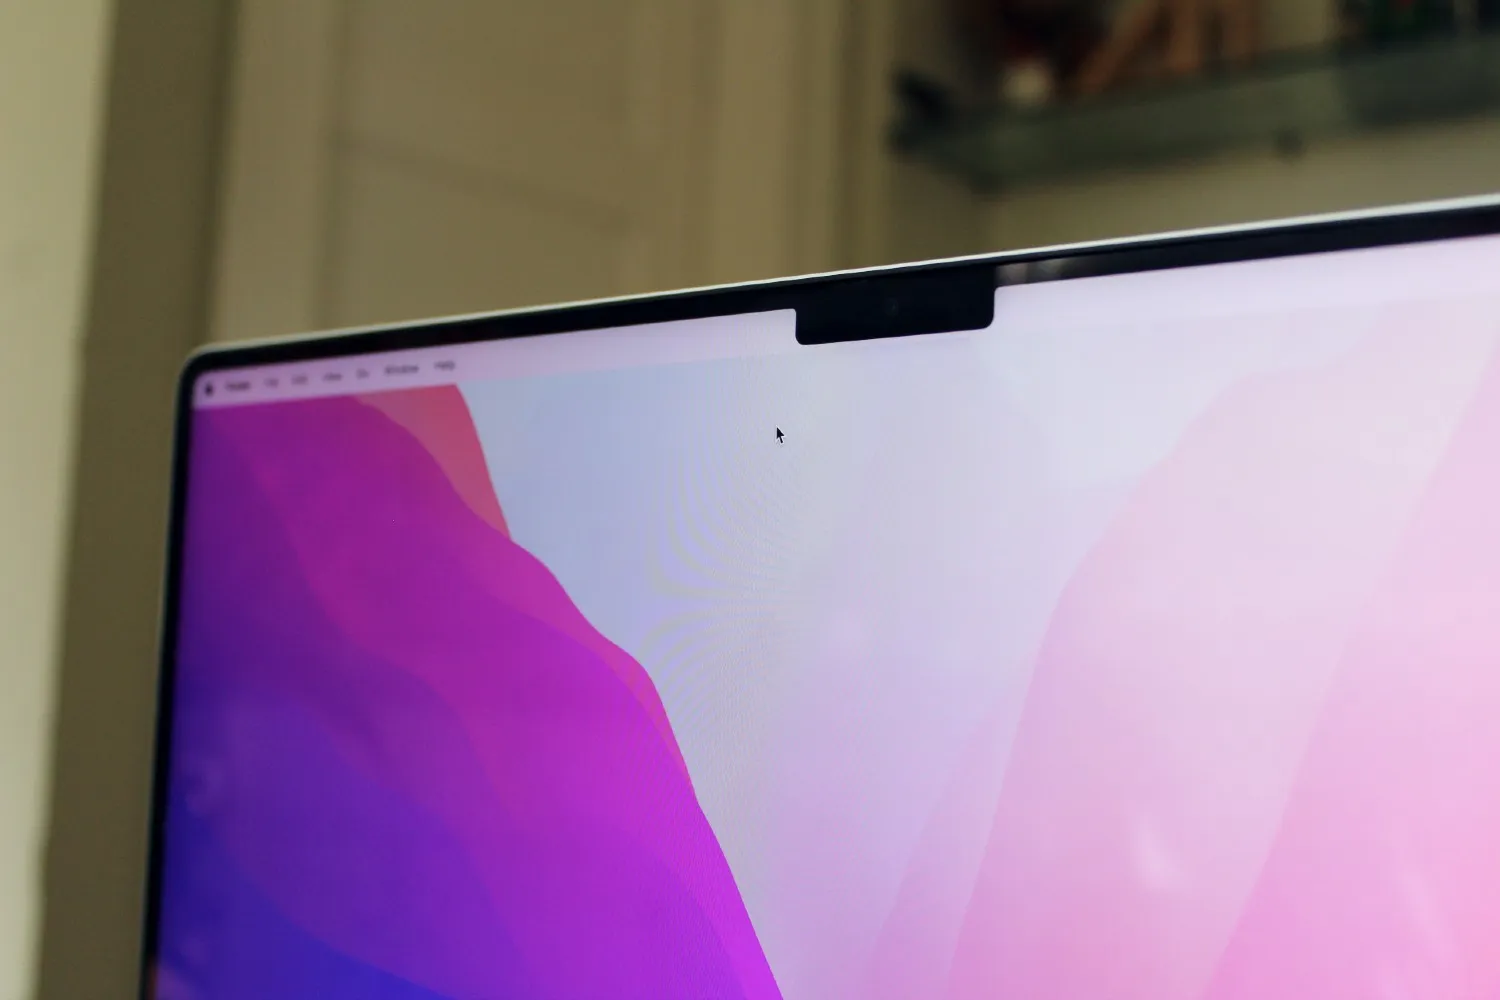 Um close-up do MacBook Pro 2021 mostrando o entalhe da tela.